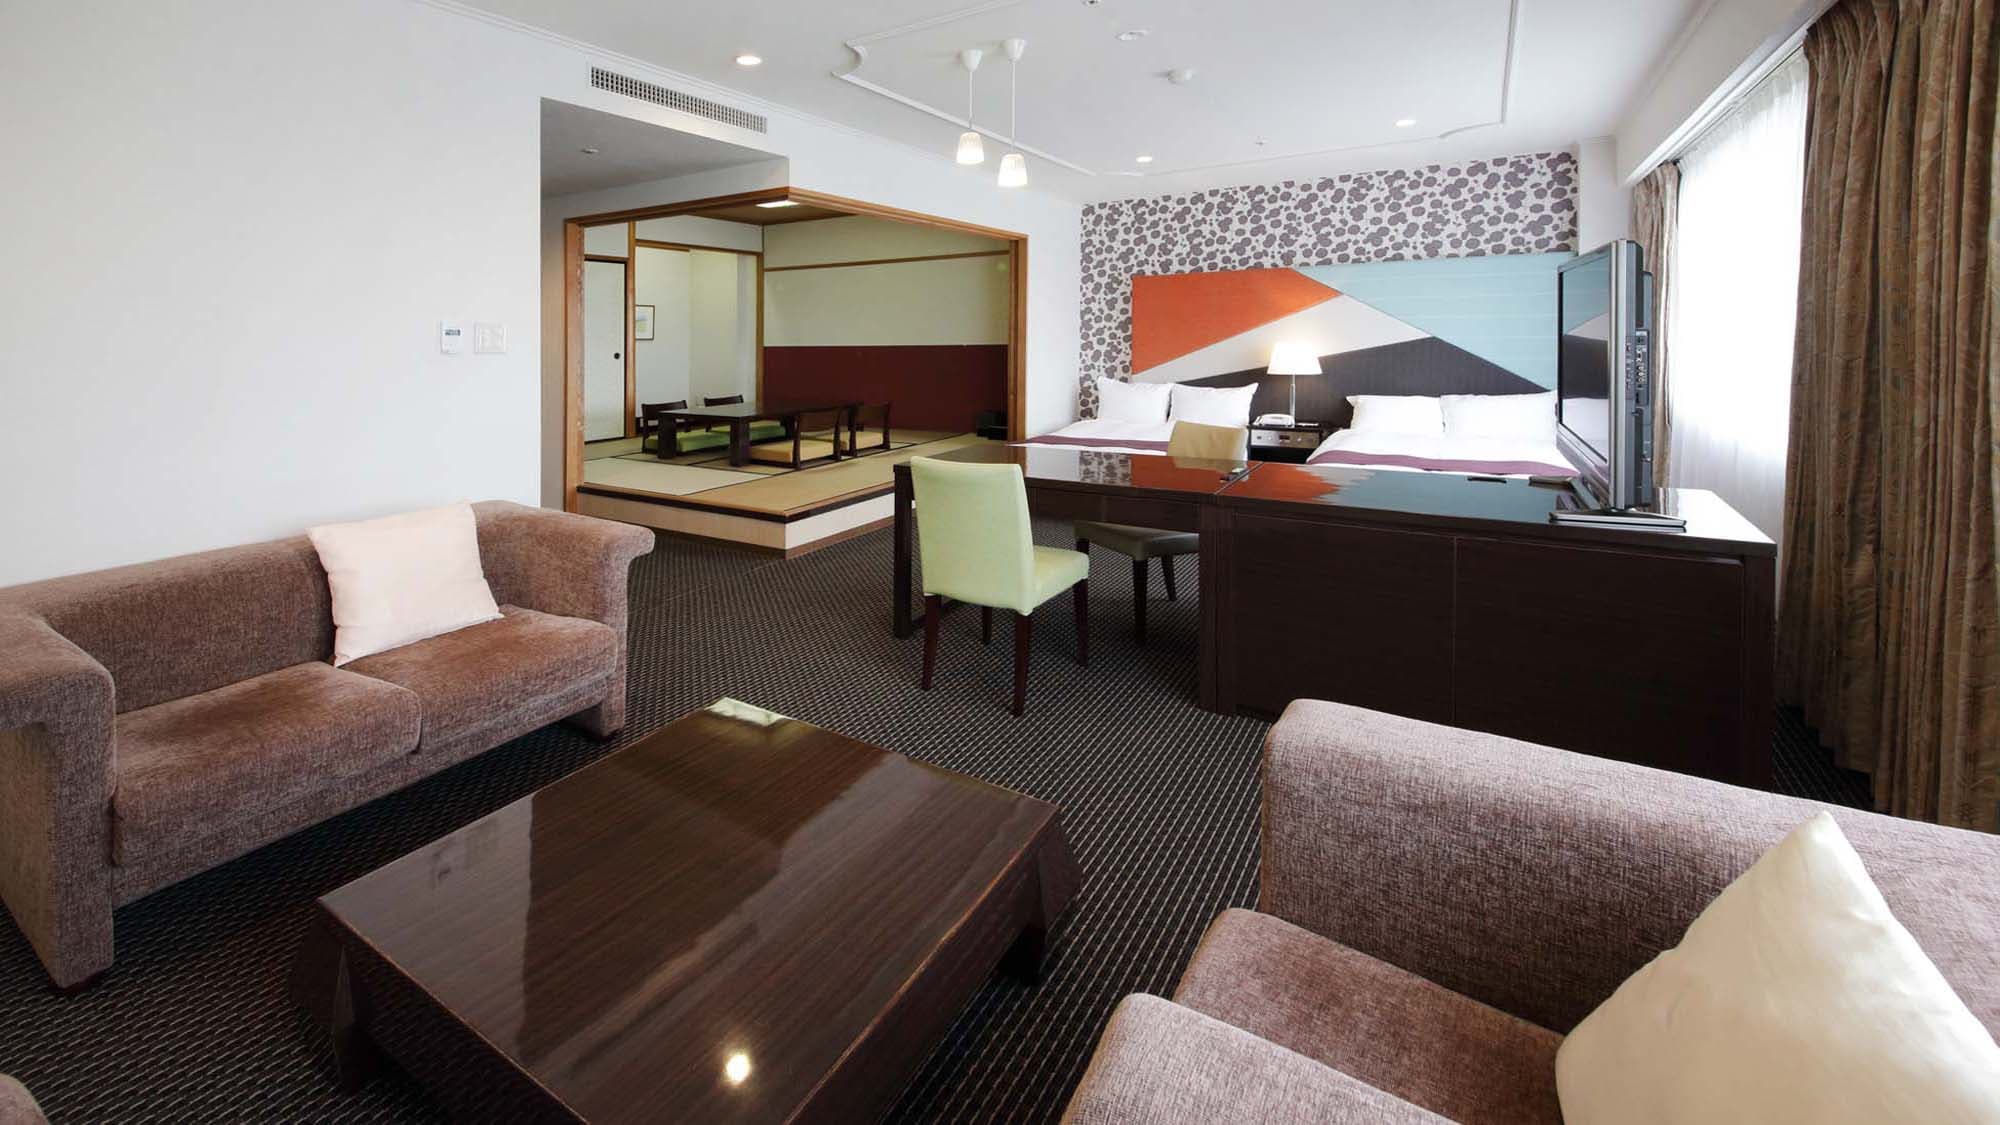 【스위트 룸】 트윈 룸에 8 다다미의 일본식 객실을 겸비한 72㎡의 스위트 룸.